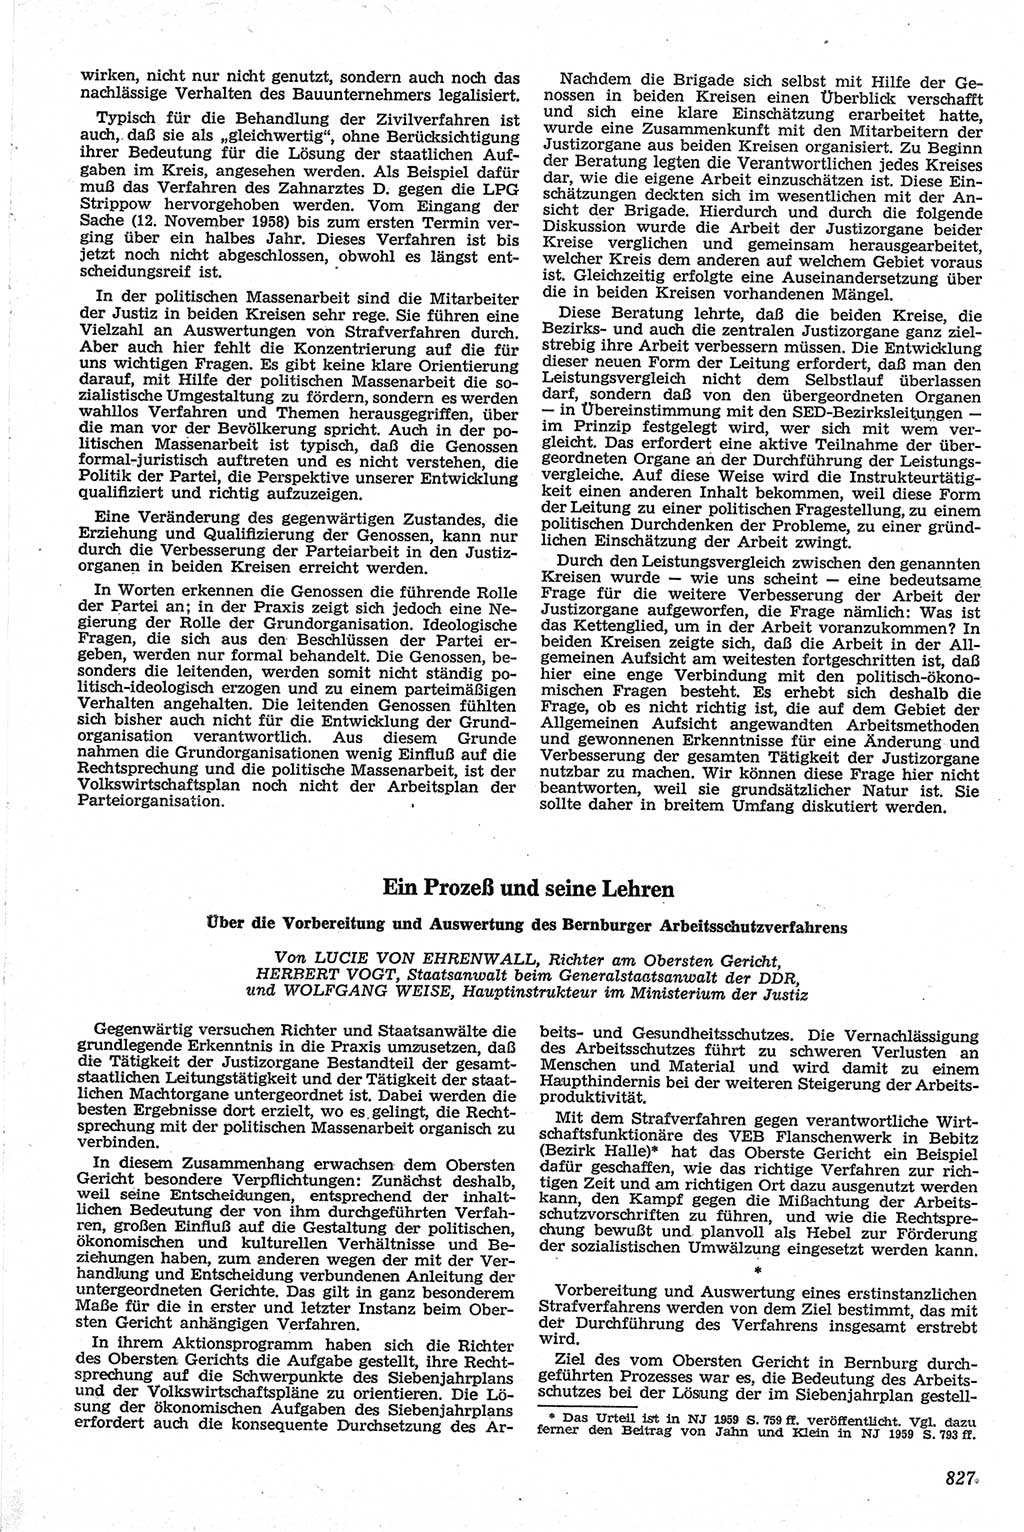 Neue Justiz (NJ), Zeitschrift für Recht und Rechtswissenschaft [Deutsche Demokratische Republik (DDR)], 13. Jahrgang 1959, Seite 827 (NJ DDR 1959, S. 827)